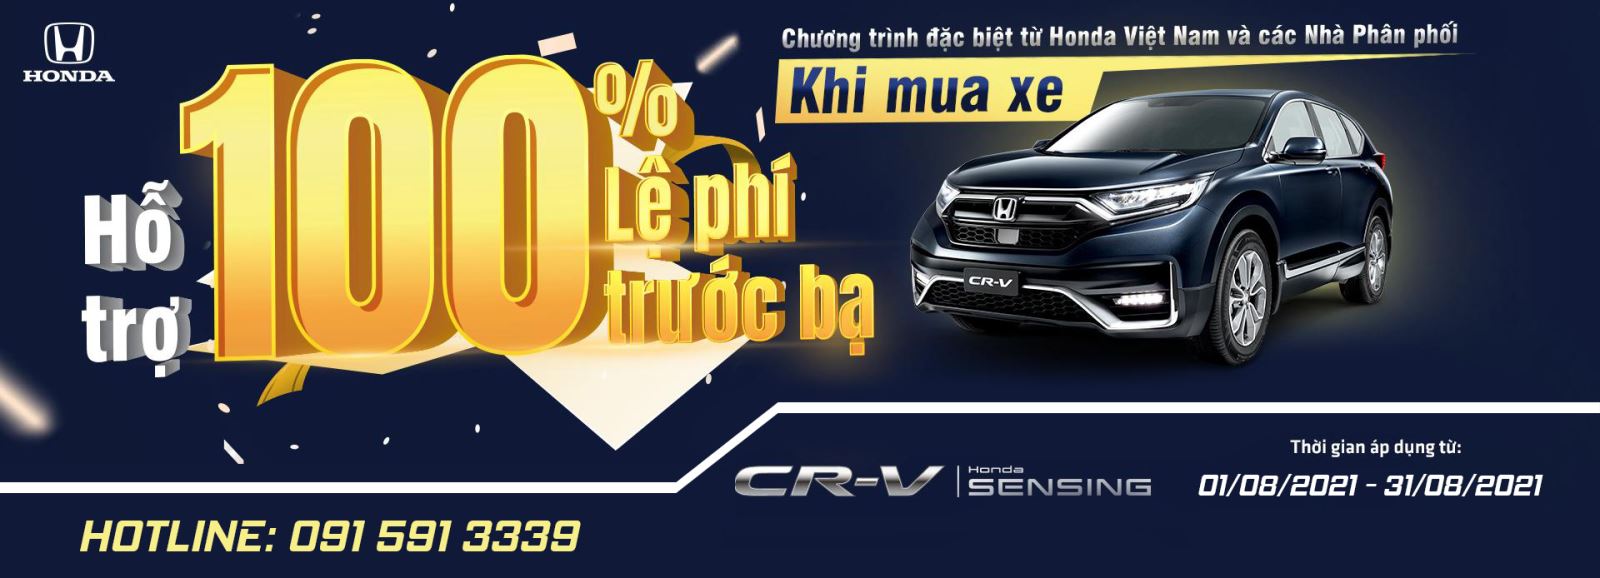 Khuyến mãi 100% Lệ phí trước bạ khi mua Honda CR-V trong tháng 8/2021